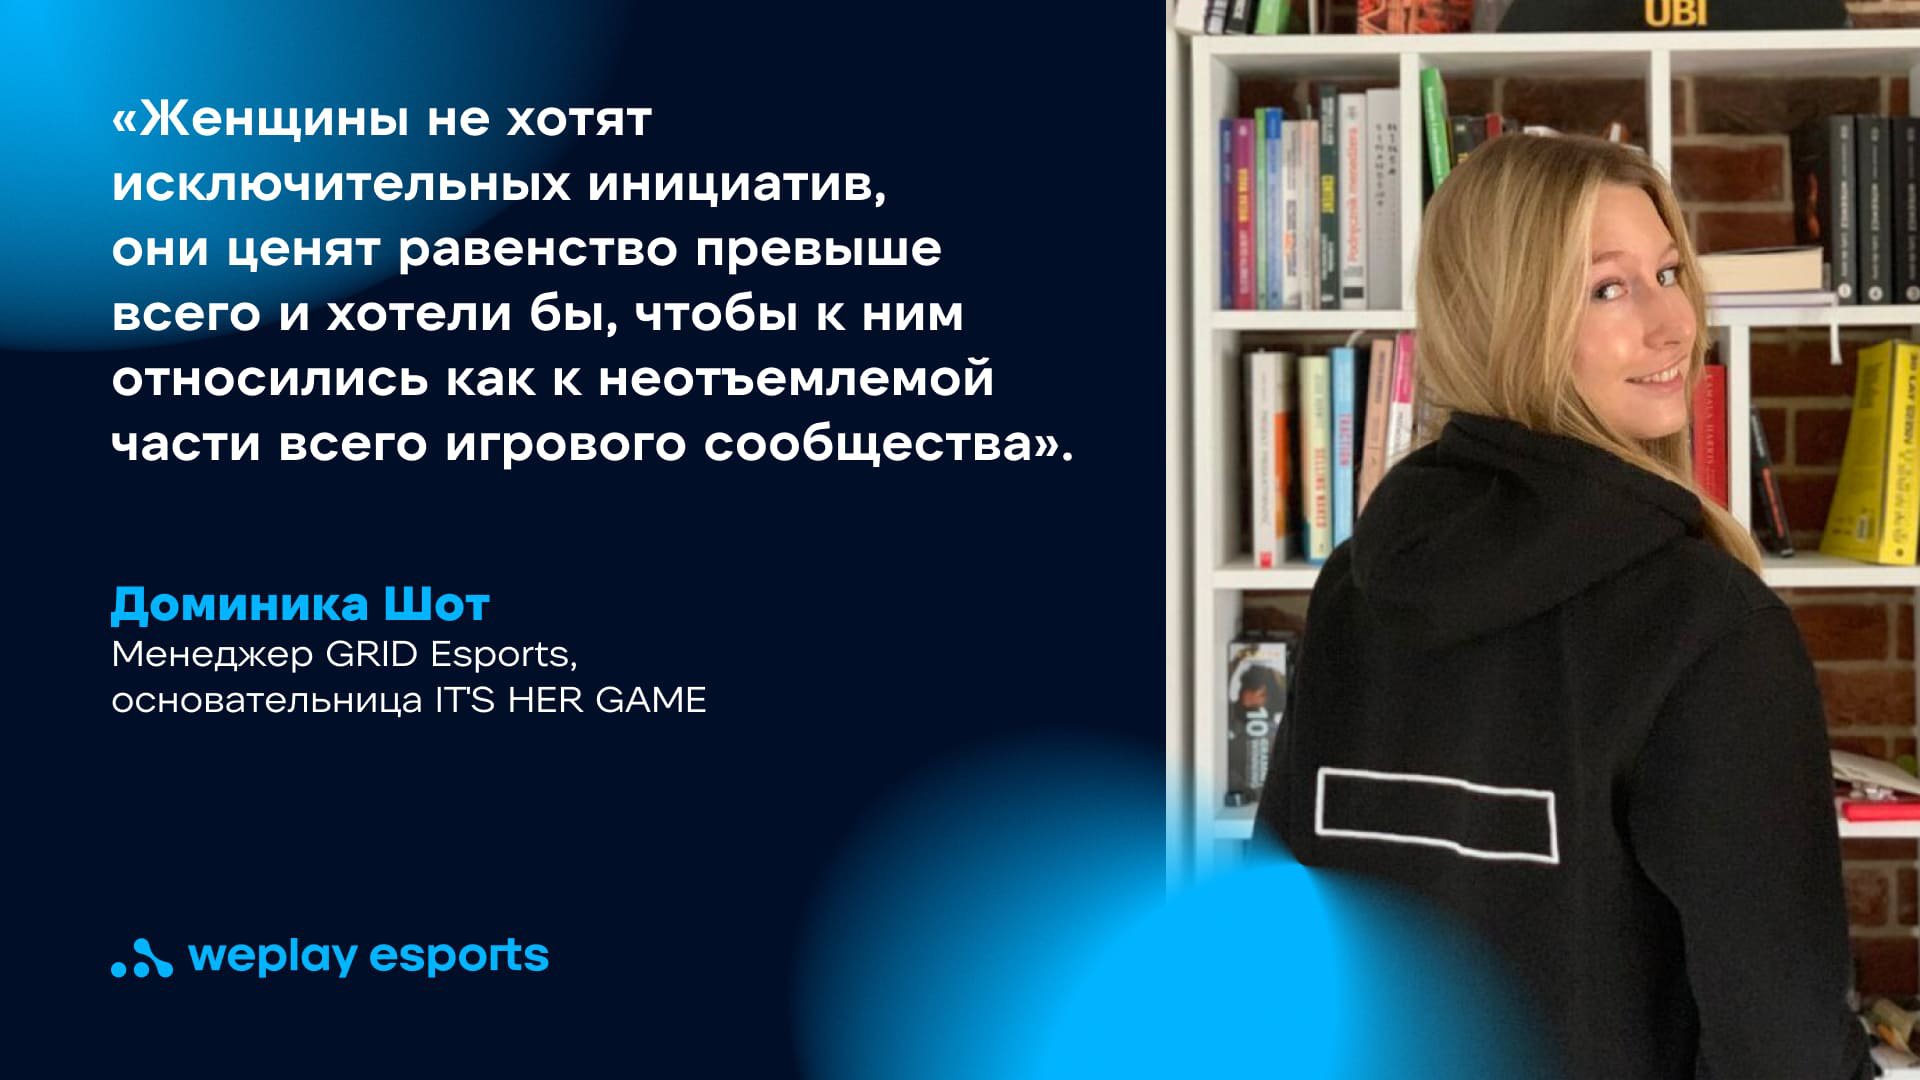 Доминика Шот, менеджер GRID Esports, основательница IT'S HER GAME. Фото: WePlay Holding